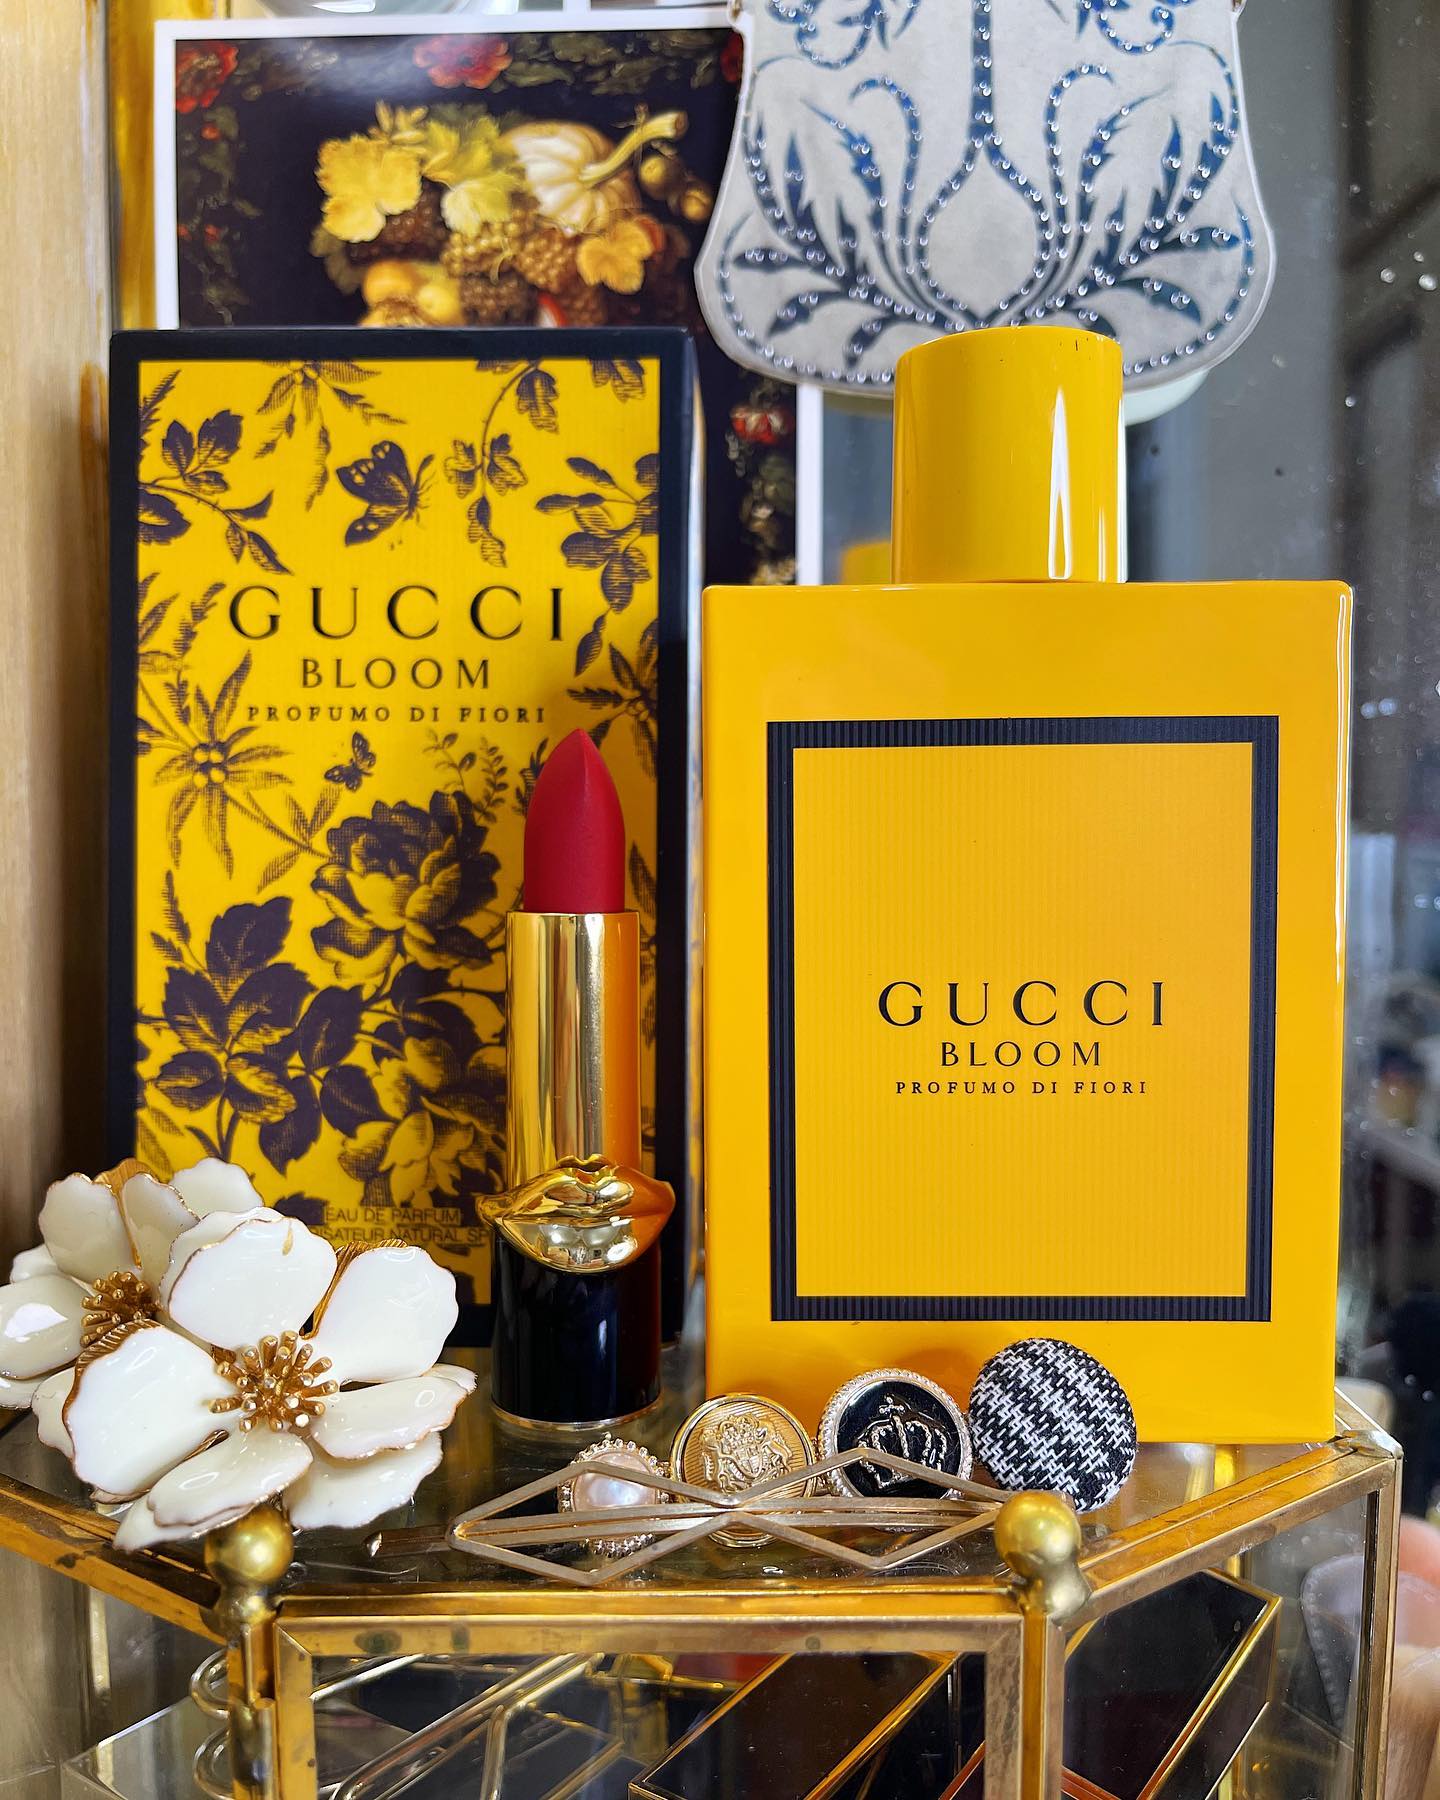 Gucci Bloom Profumo di Fiori Is Probably Bridgerton in a Bottle